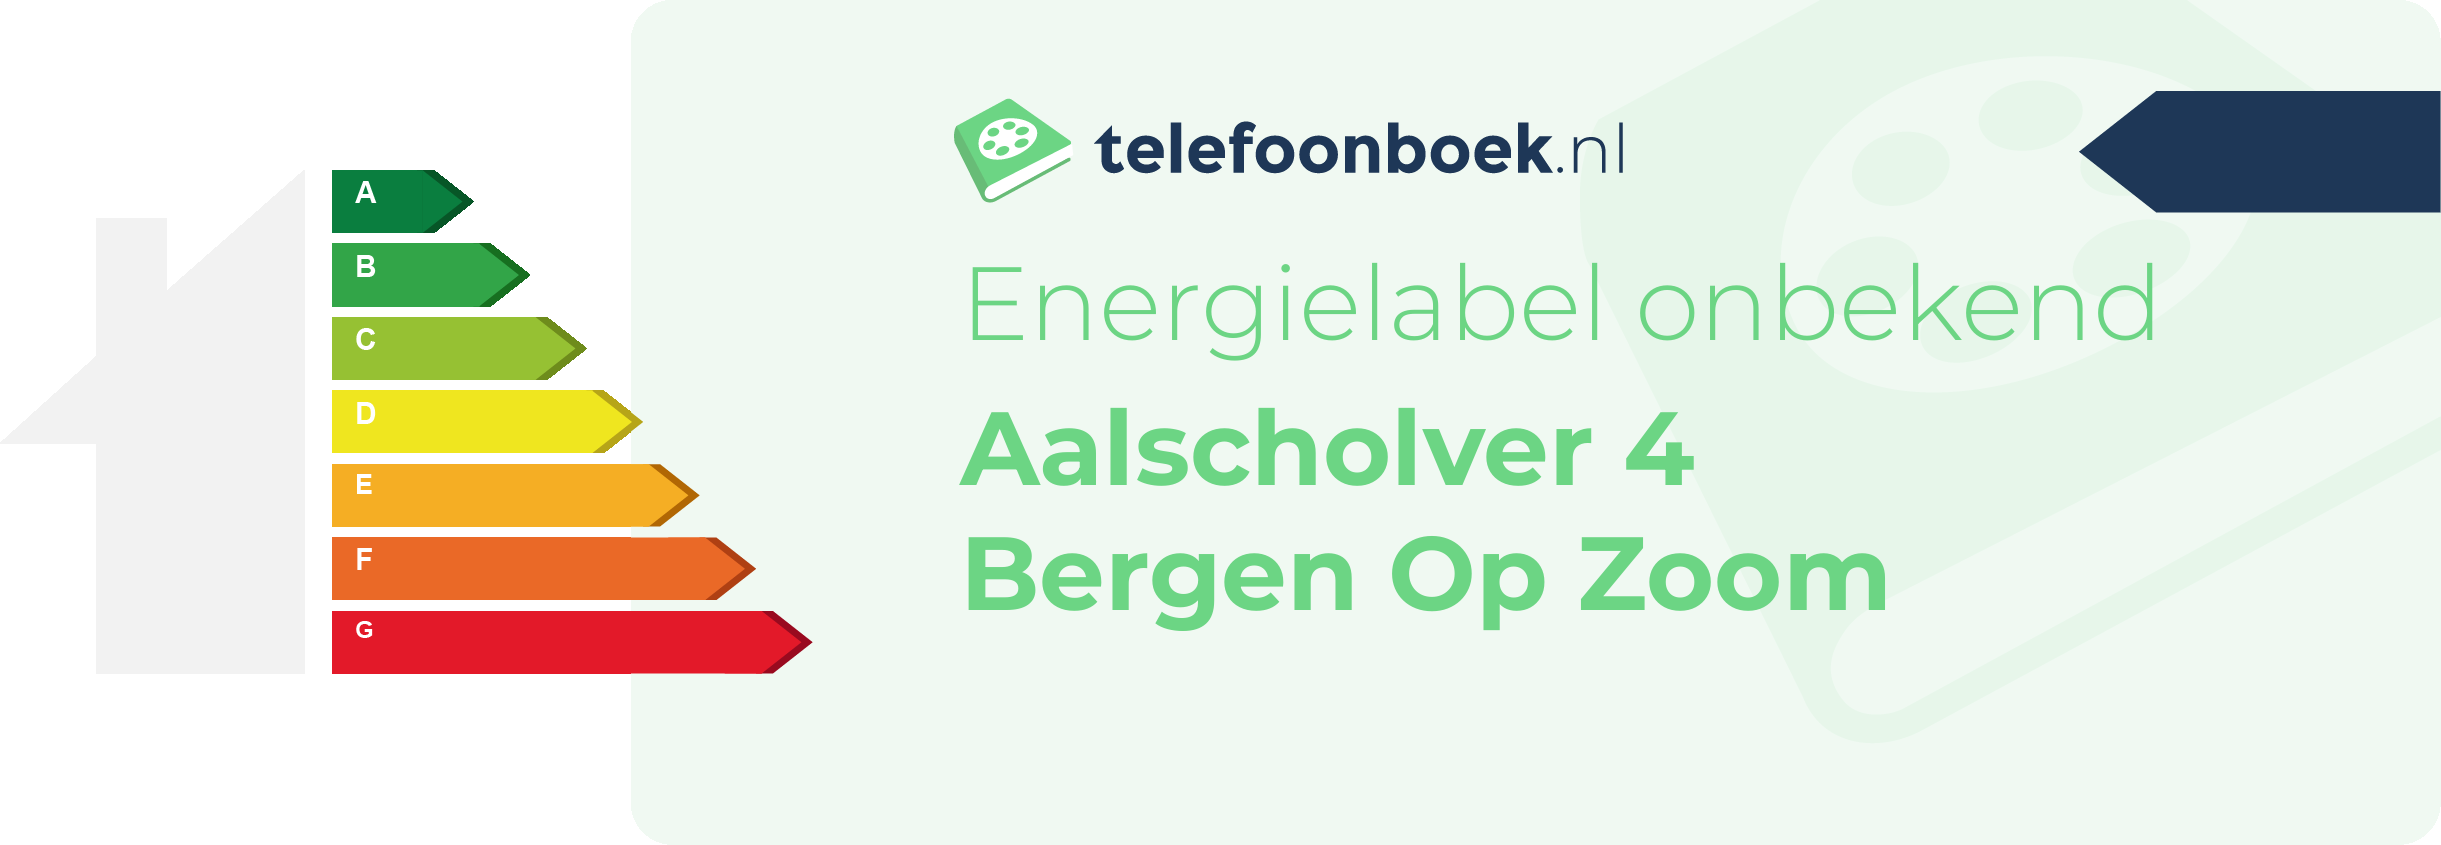 Energielabel Aalscholver 4 Bergen Op Zoom